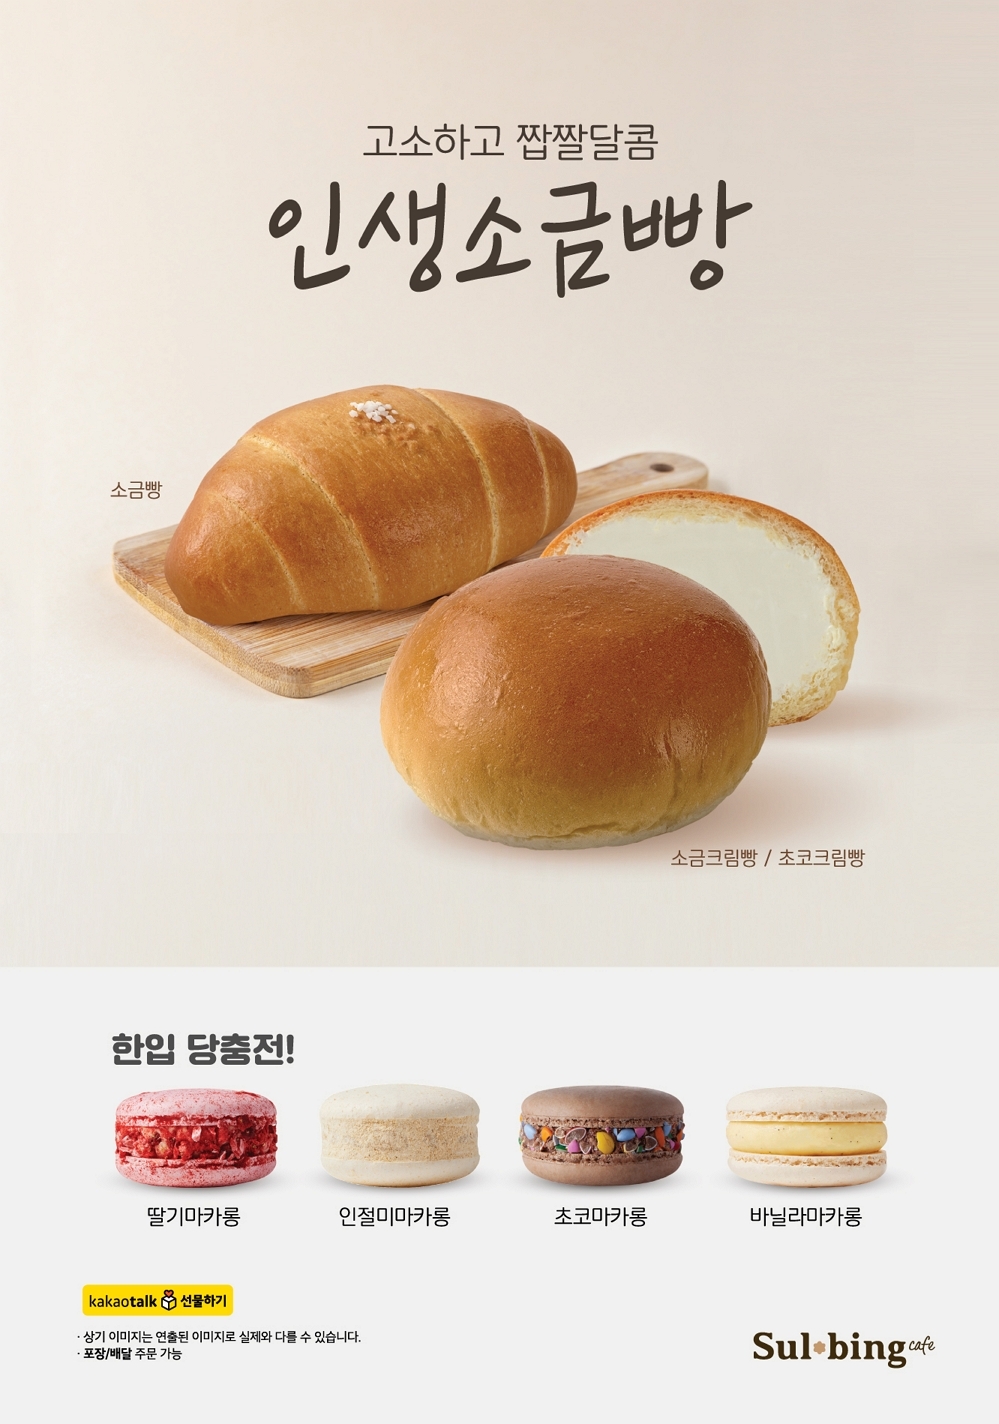 [생활경제 이슈] 설빙 ‘소금빵’·’소금크림빵’ 등 출시 外